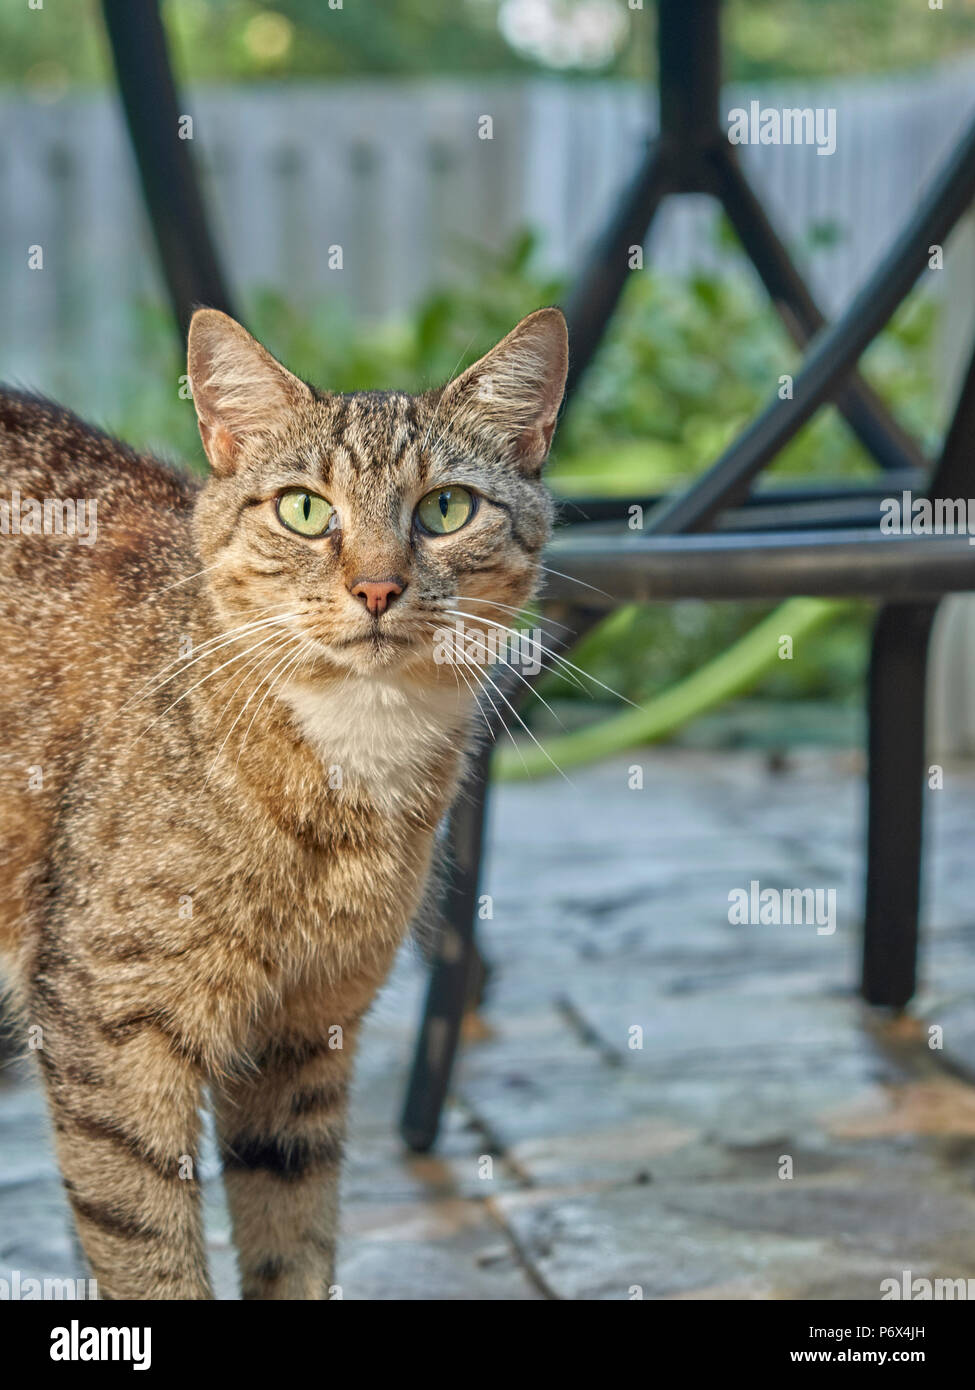 Raya de tigre gris doméstico shorthair tabby gato al aire libre parado en un patio del jardín. Foto de stock